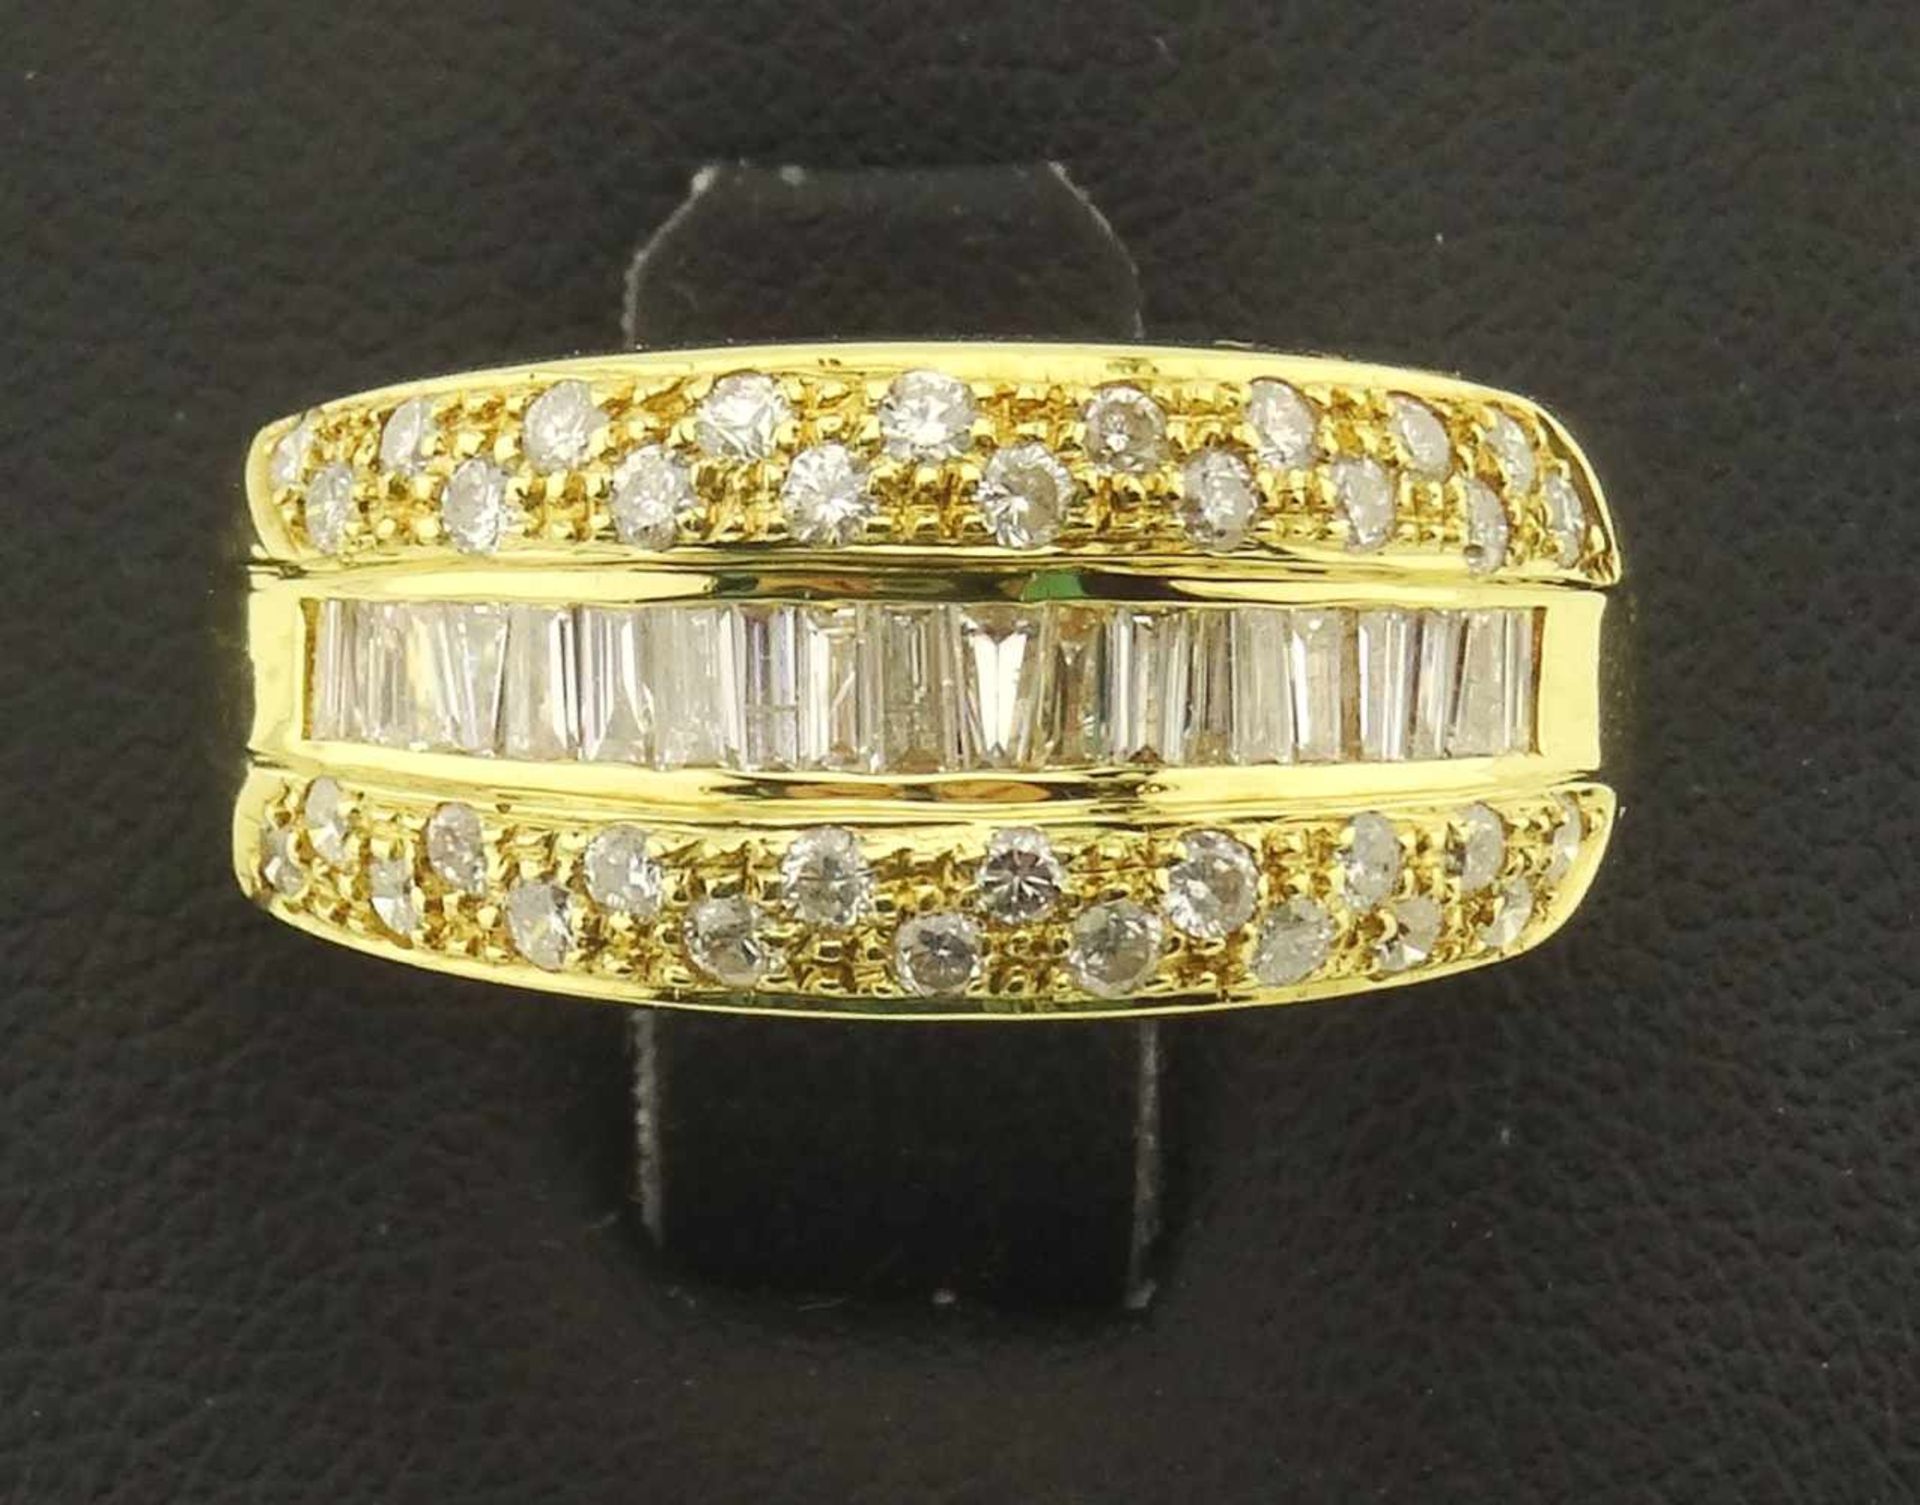 Damenring 750 Gold Brillant / Diamanten sehr schöner Brillant / Diamantring in 750 Gold 18k,